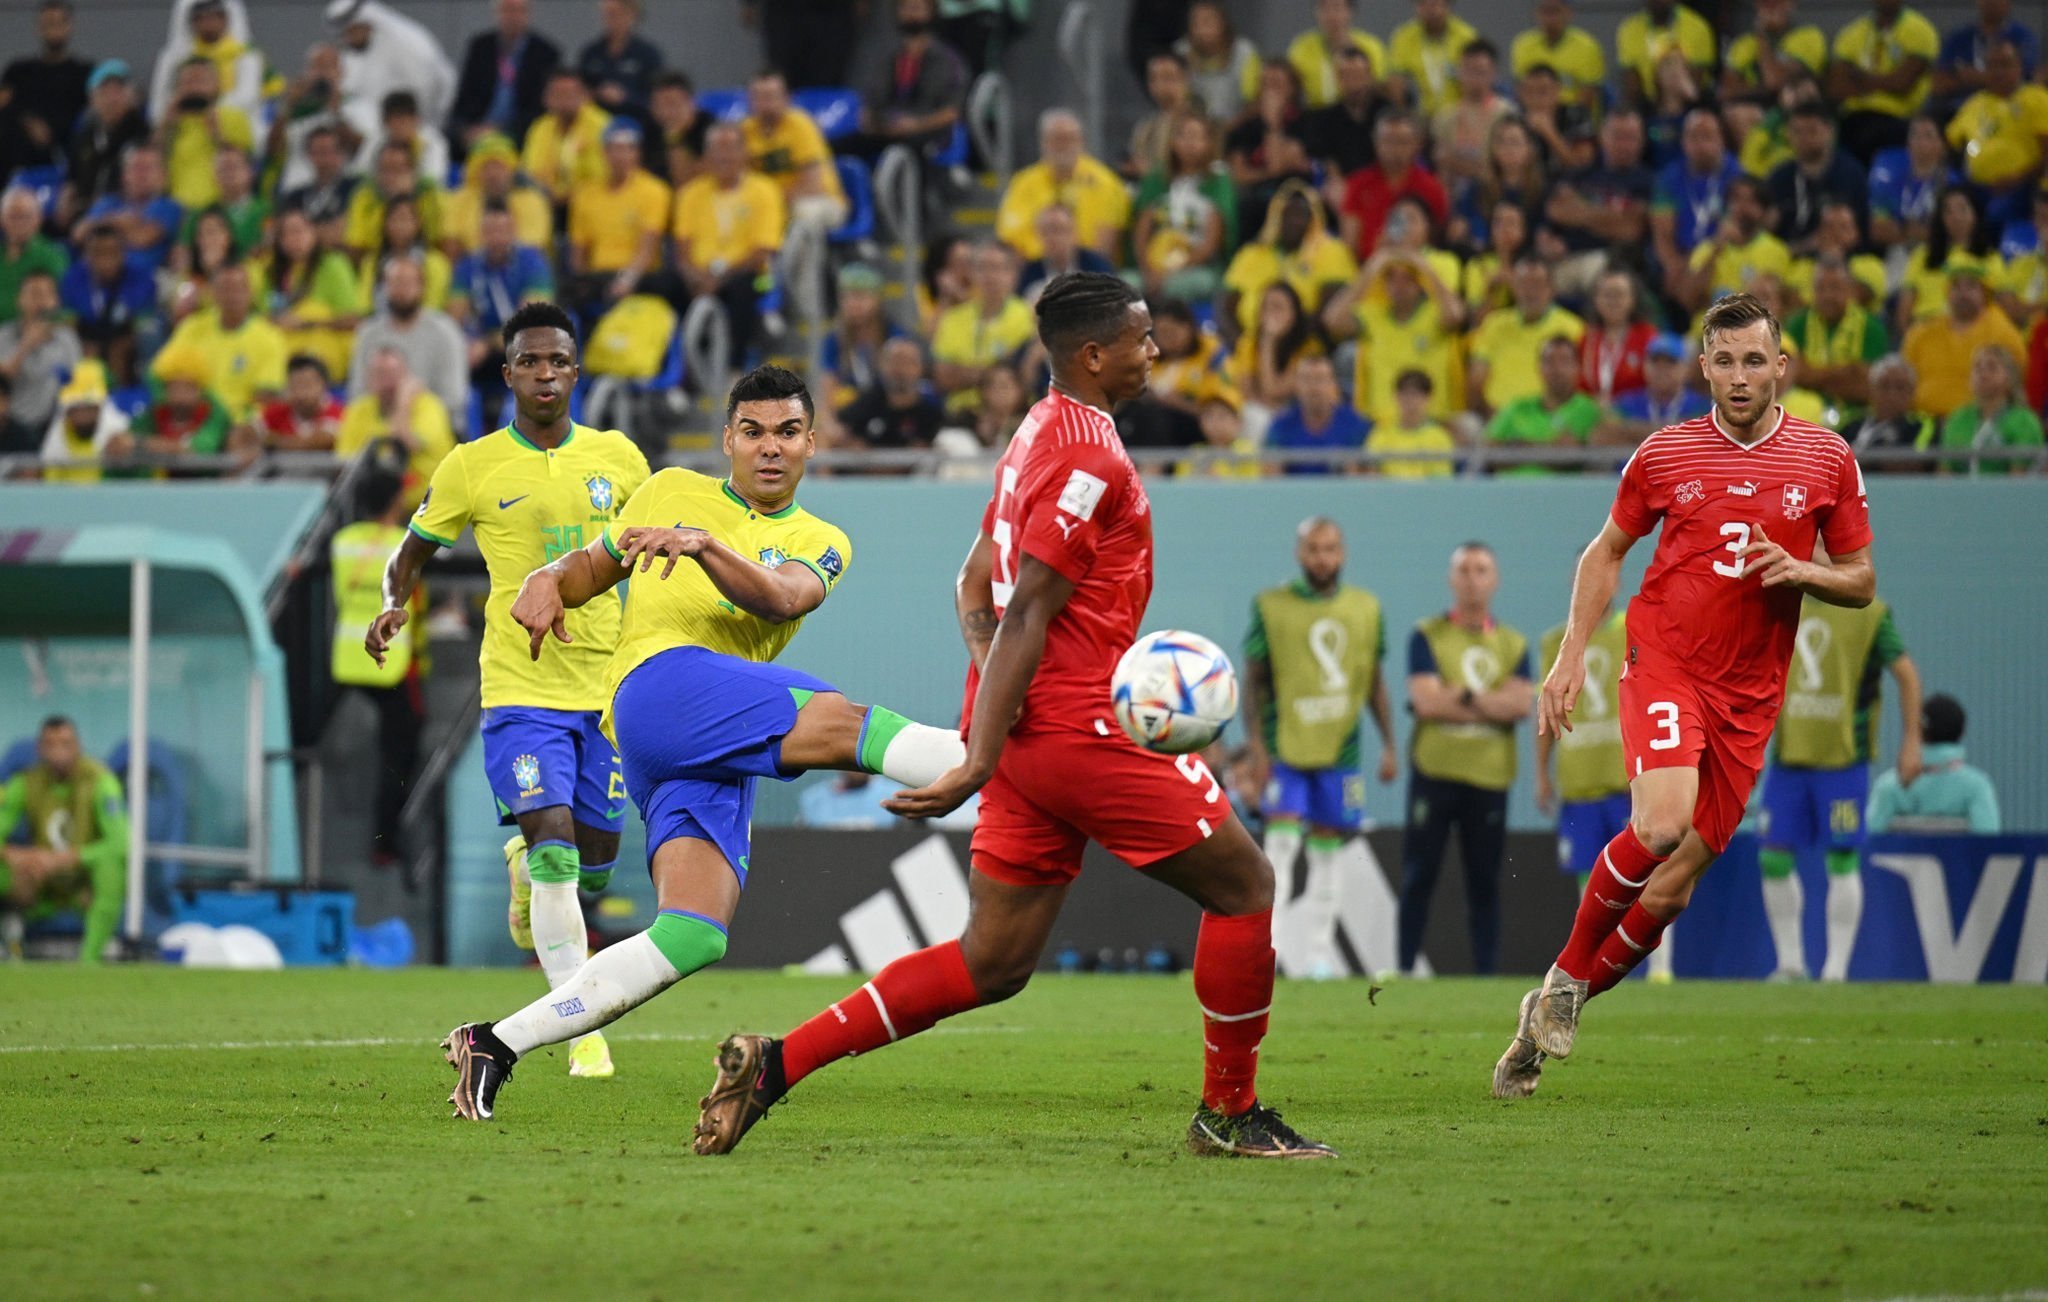 أهدى كاسيميرو منتخب البرازيل بطاقة التأهل إلى ثمن نهائي كأس العالم FIFA قطر 2022™ بتسجيله هدفاً حاسماً أمام سويسرا.